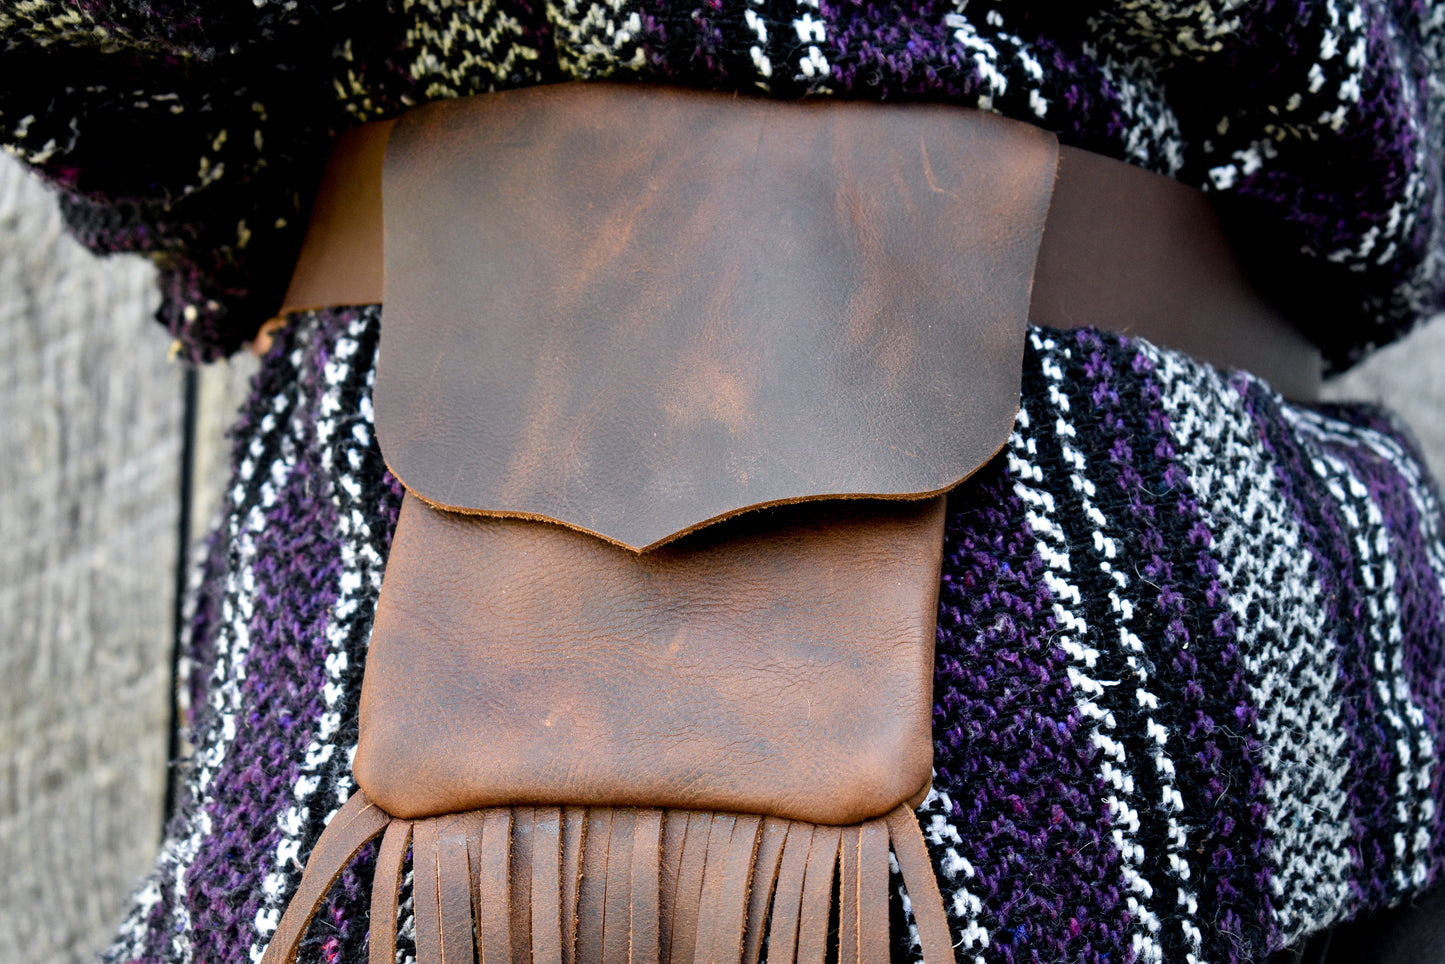 Pochette BELT en cuir plié, pochette bushcraft, pochette EDC, sac taille, sac ceinture ou sac hanche